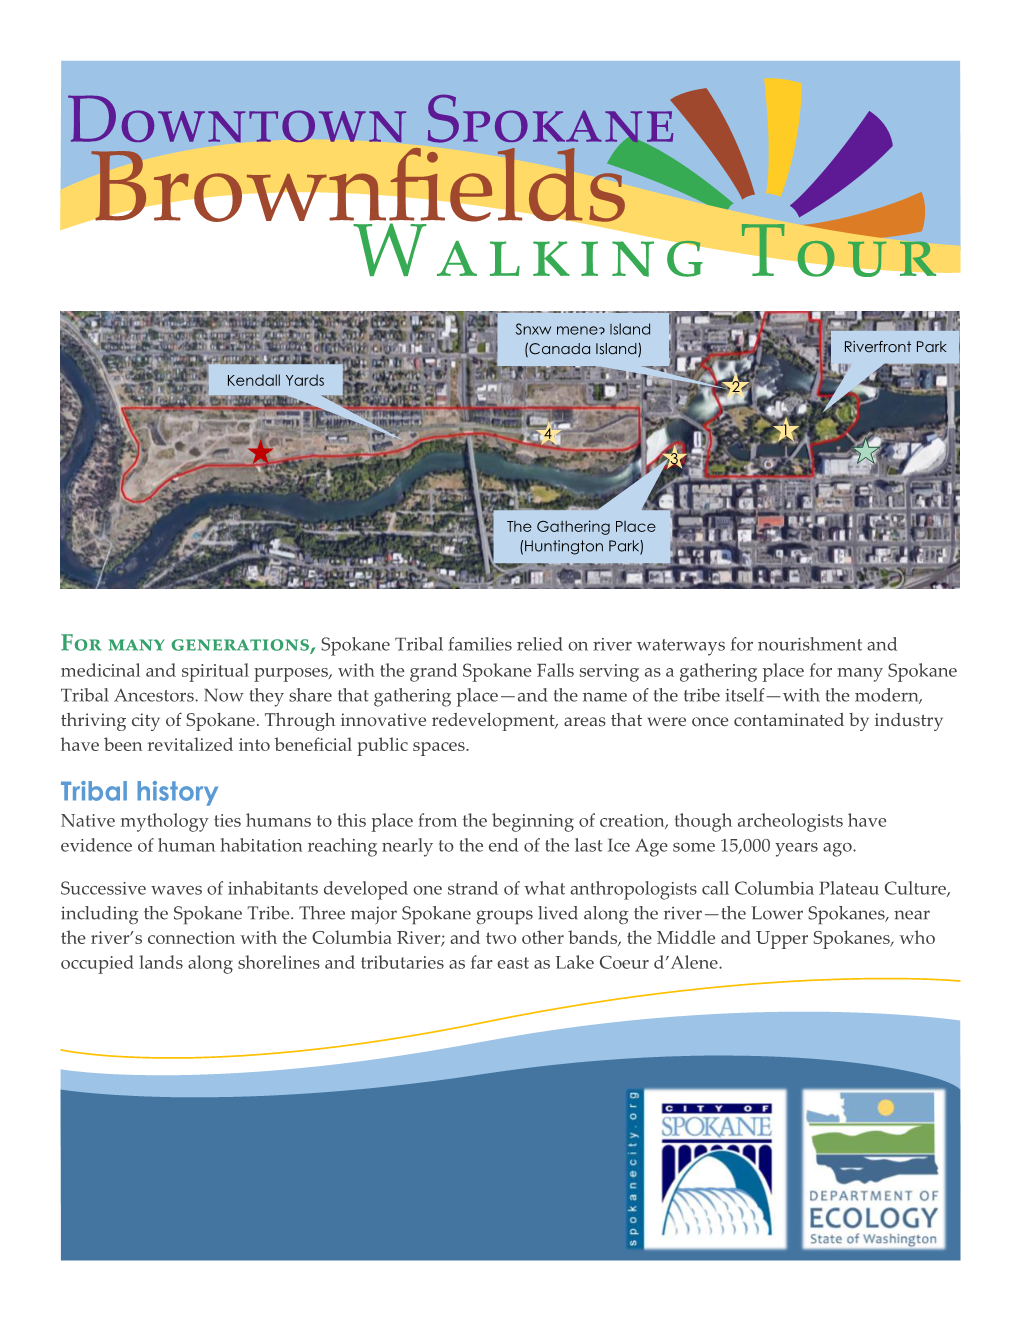 Downtown Spokane Brownfield Walking Tour